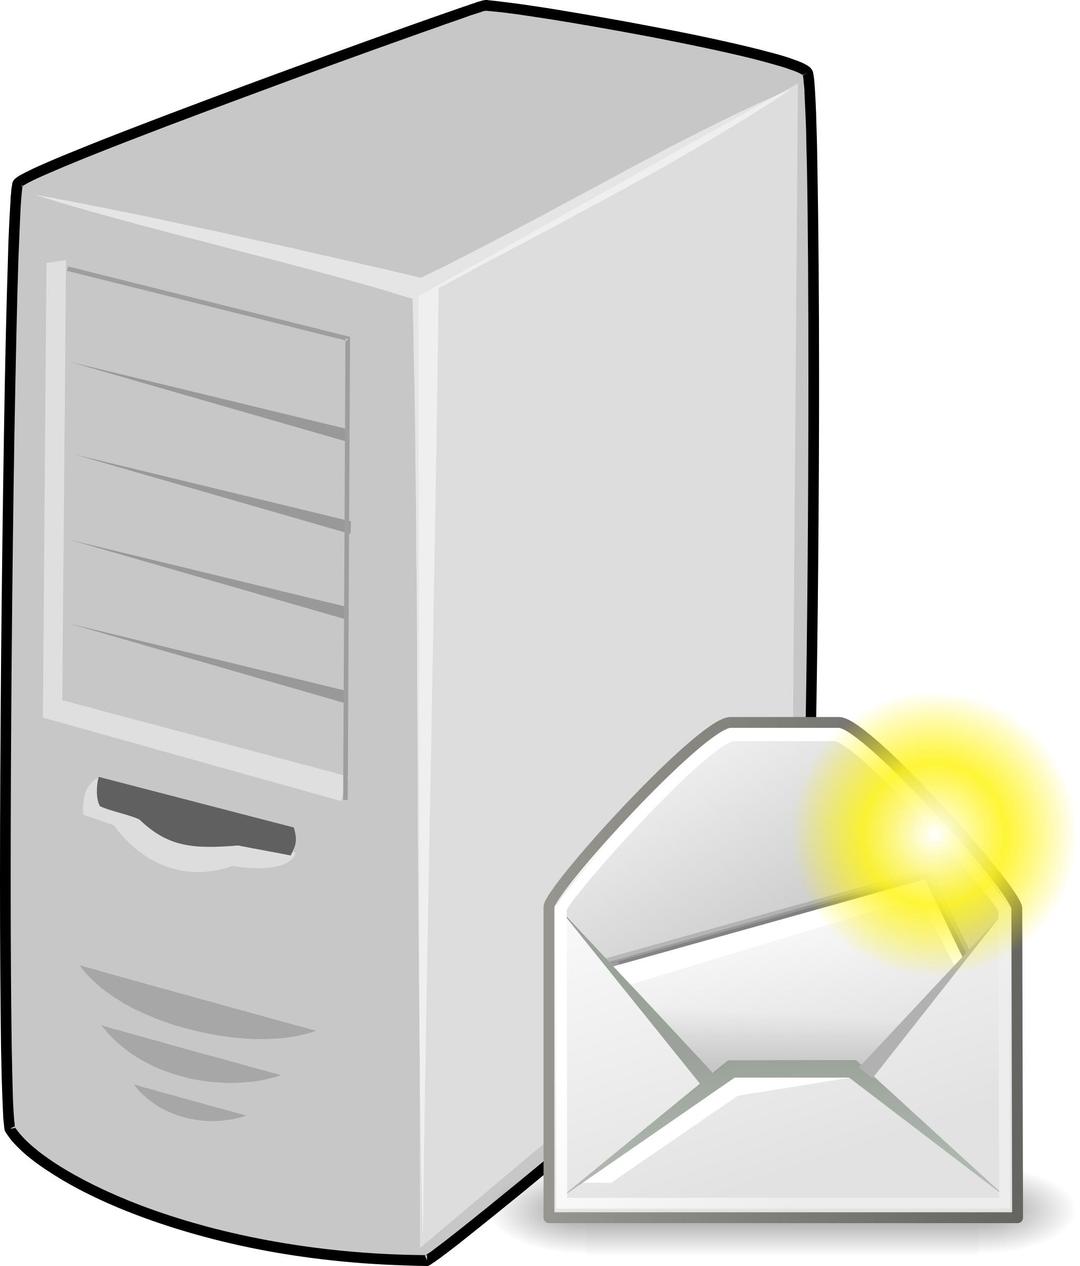 email server png transparent